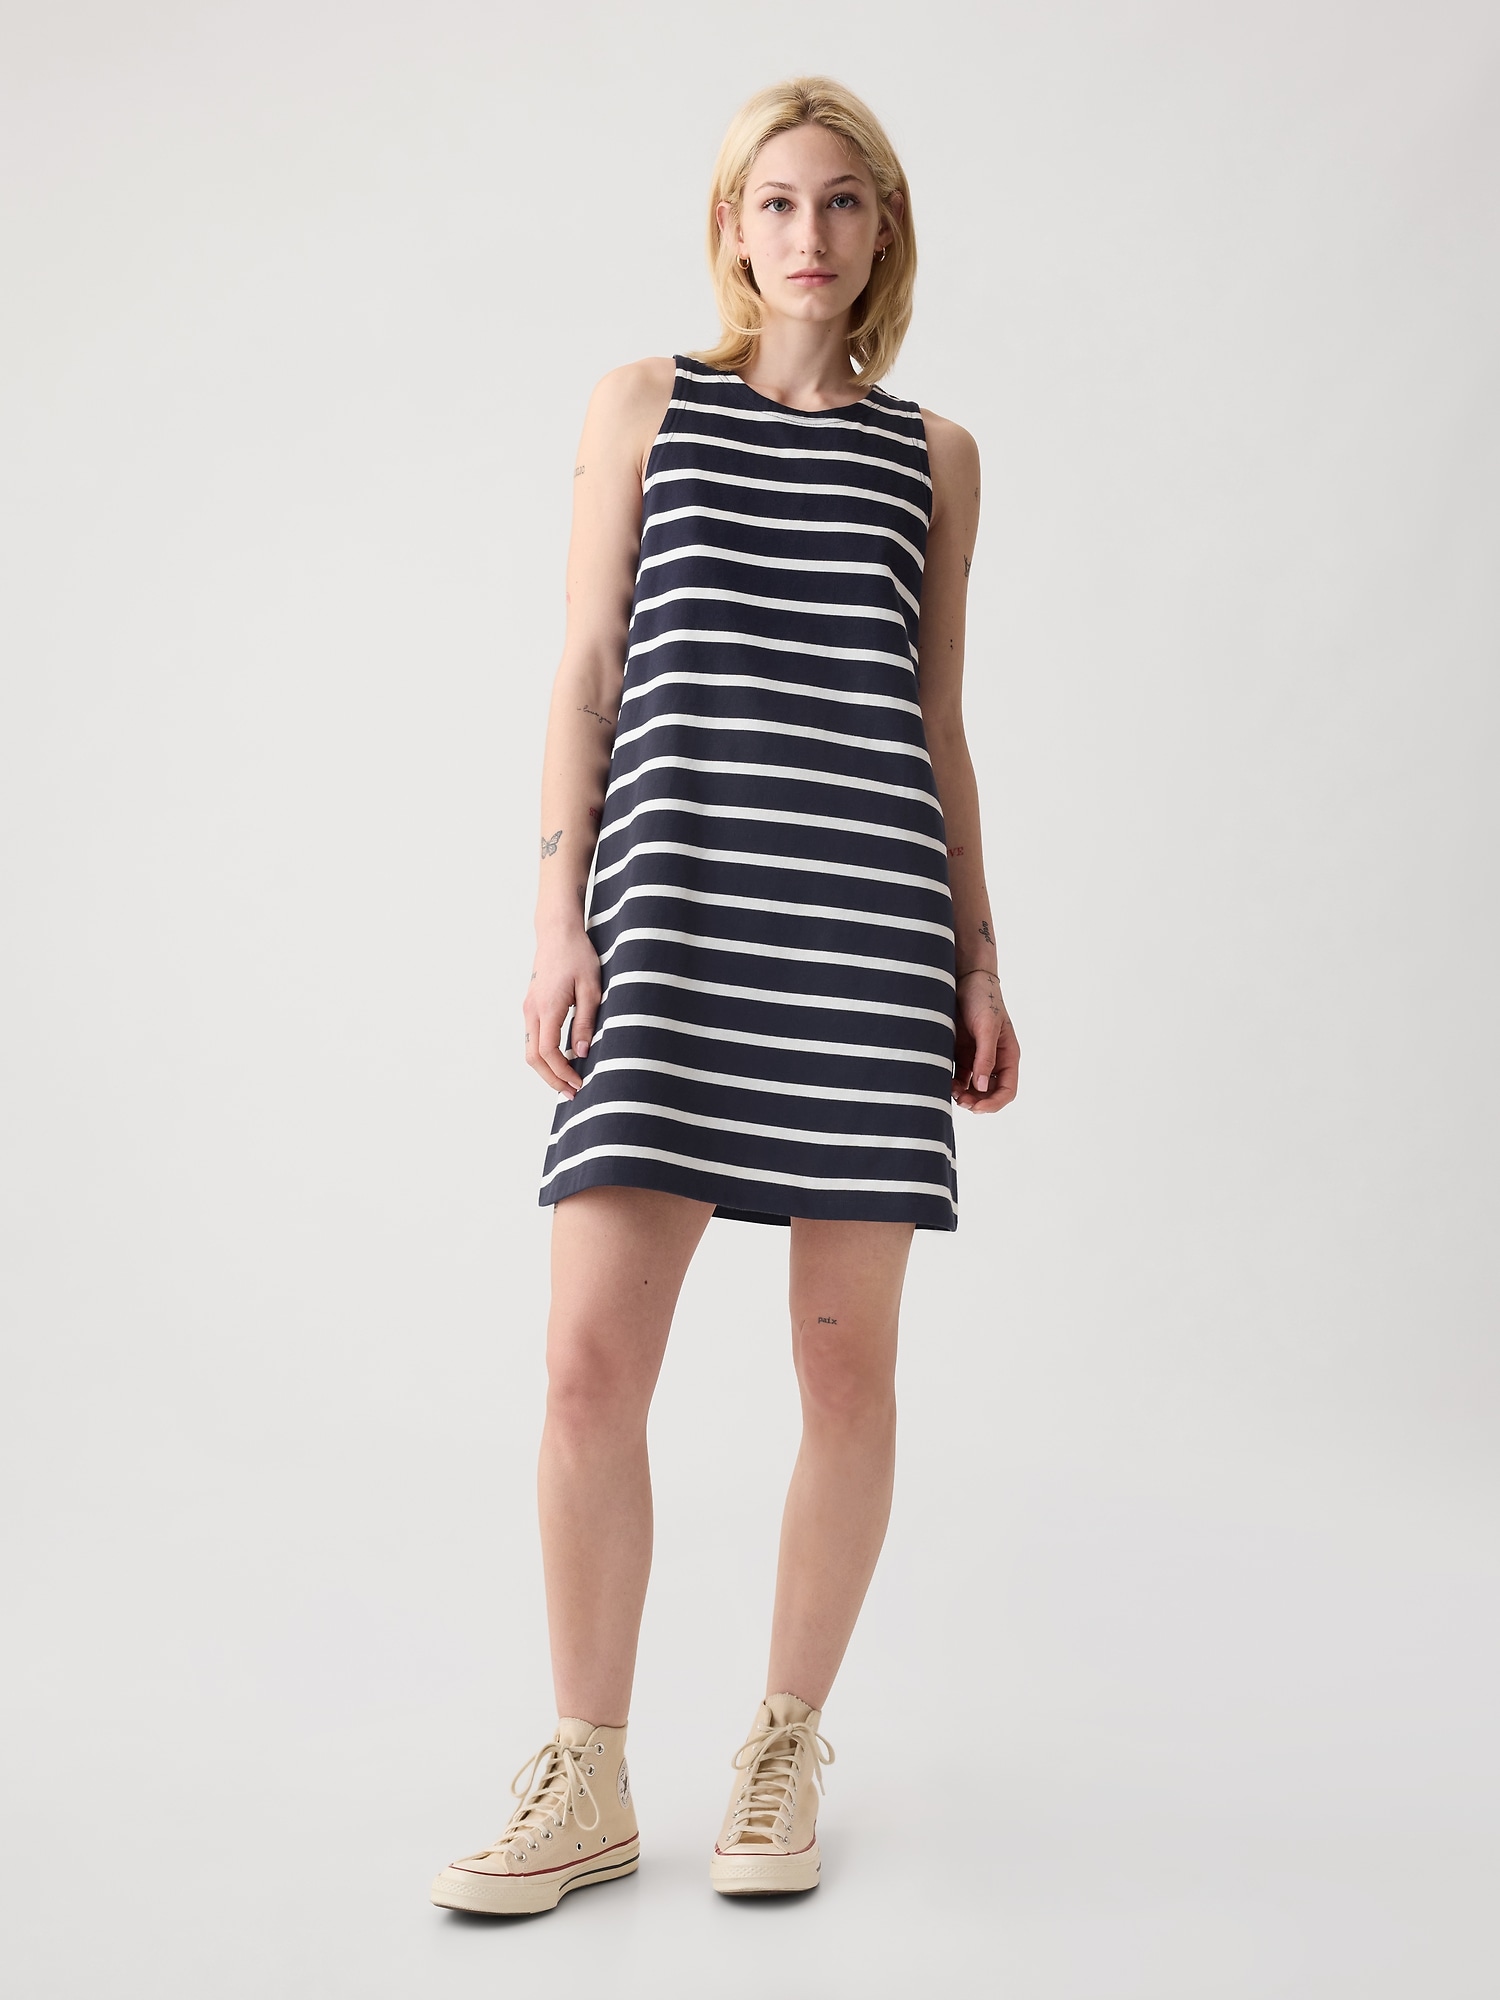 Gap Jersey Swing Mini Dress In Navy Blue & White Stripe